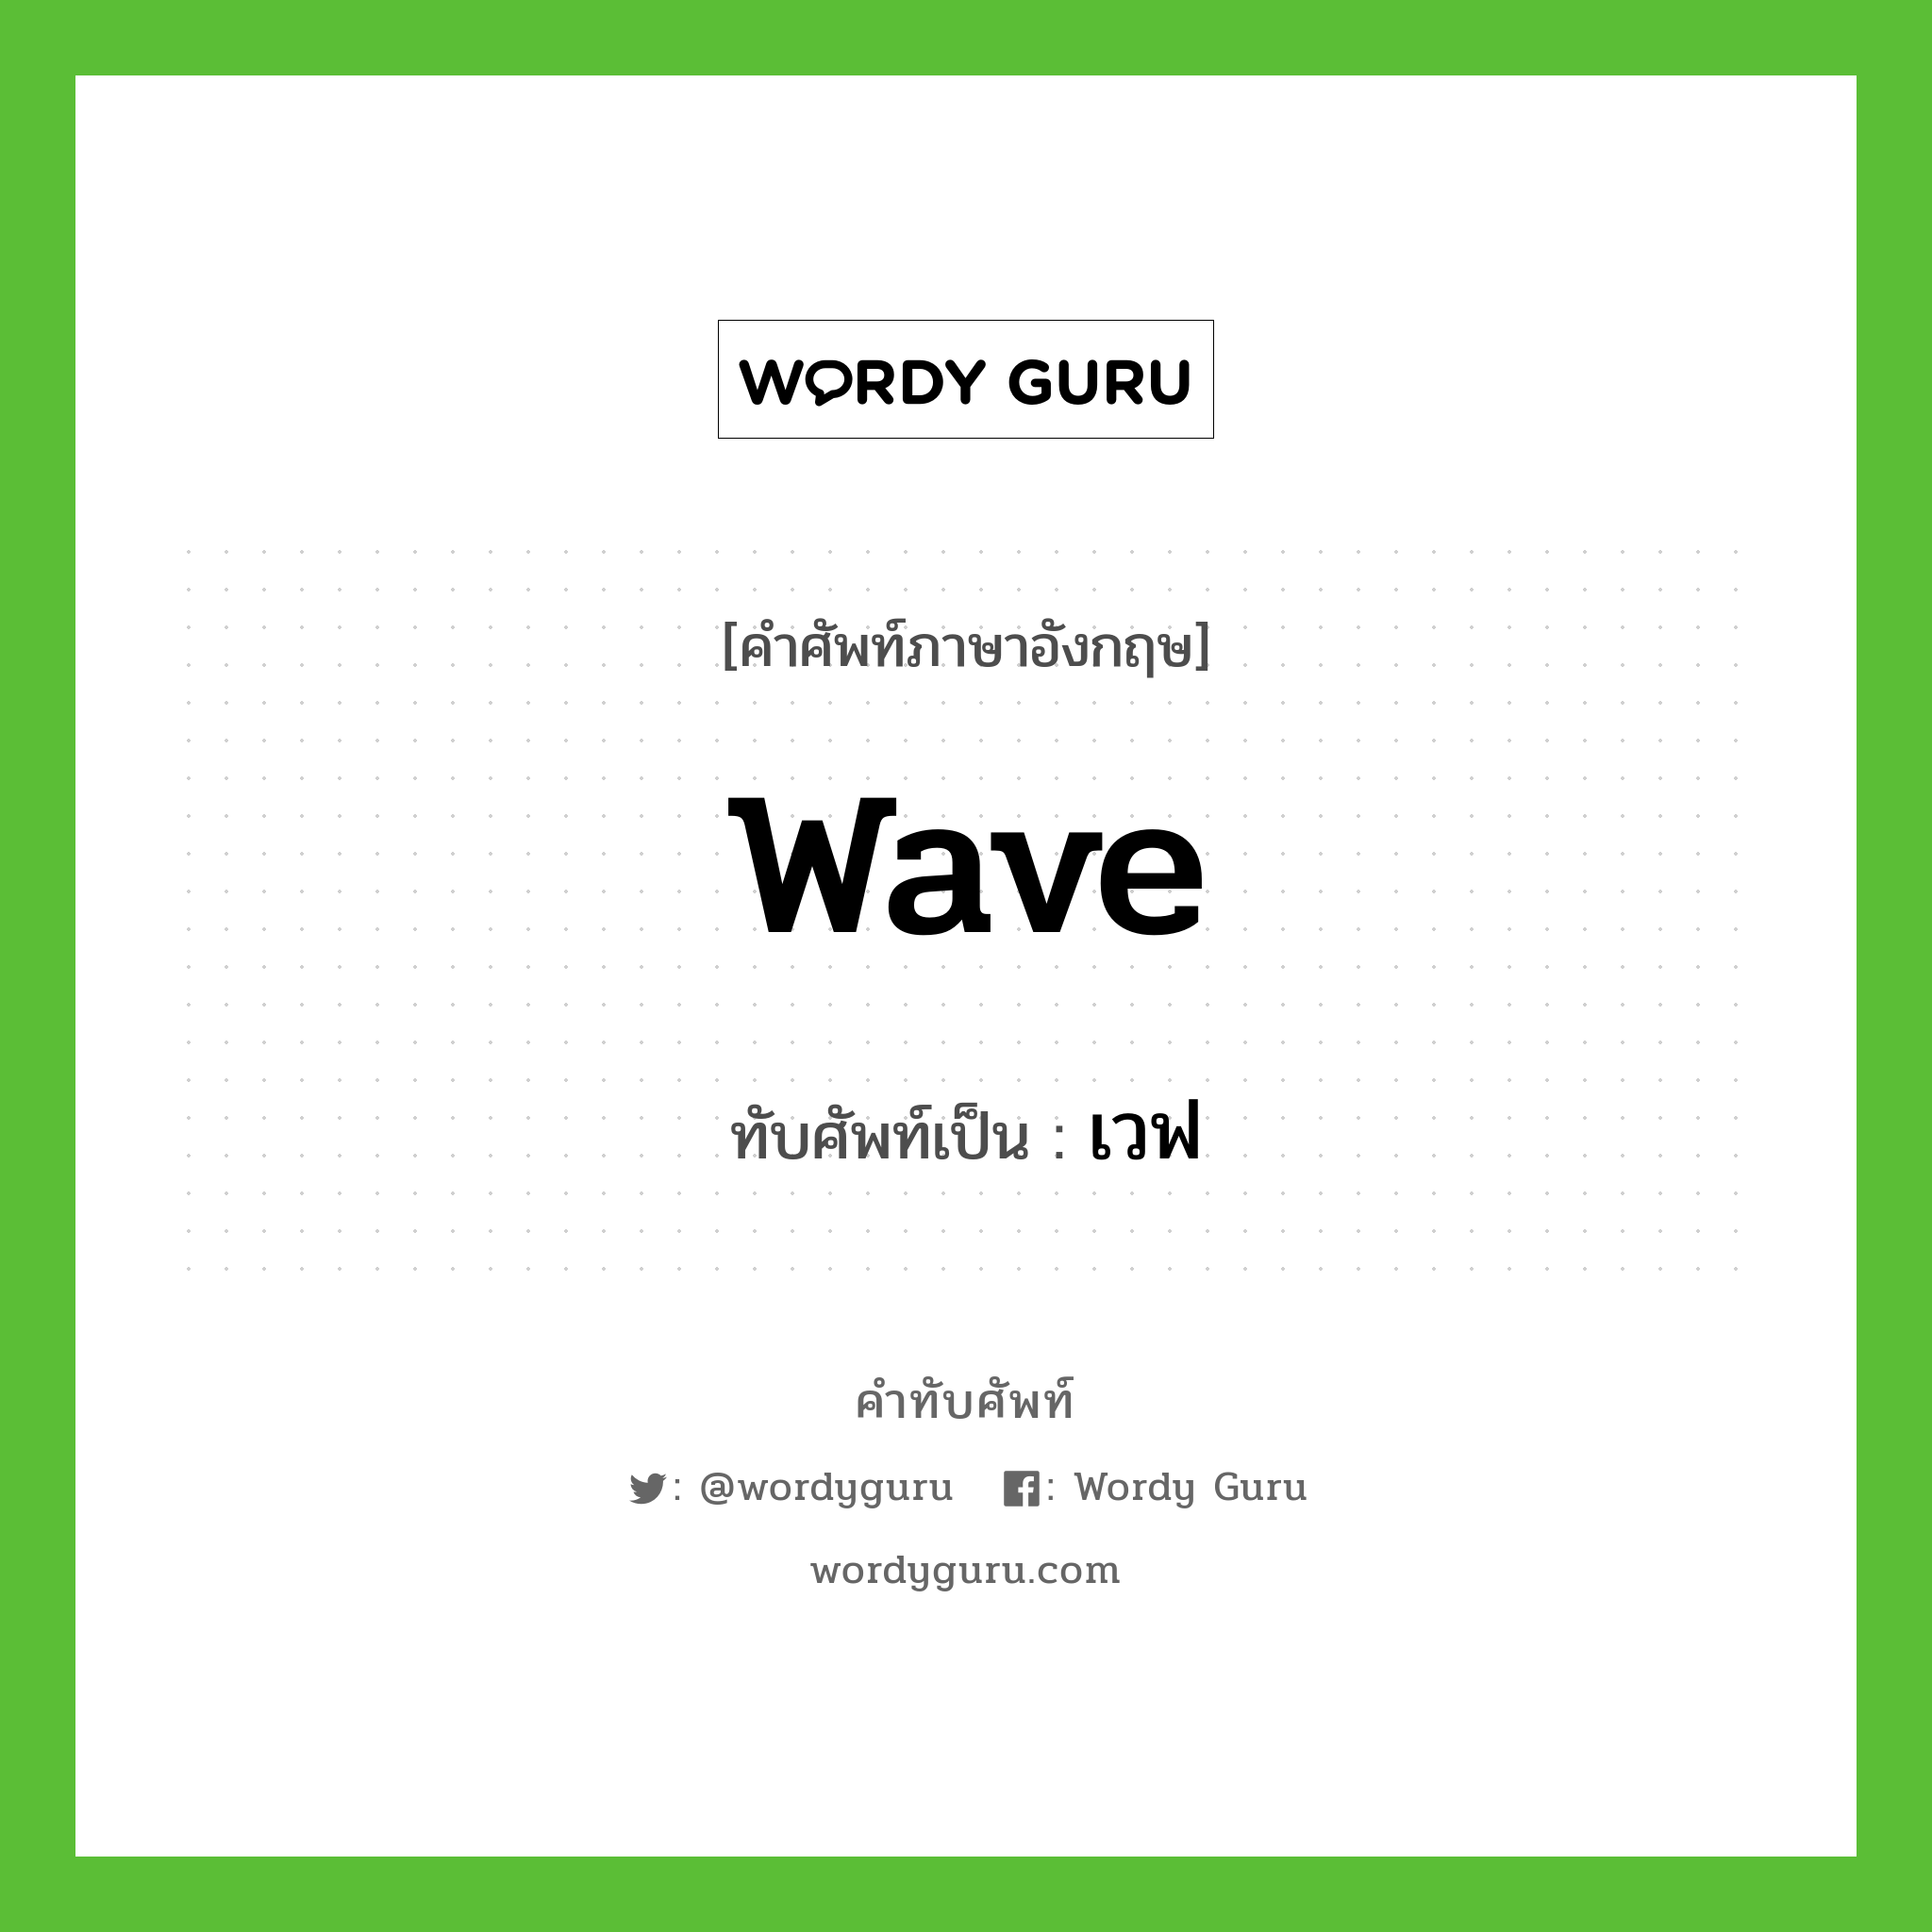 wave เขียนเป็นคำไทยว่าอะไร?, คำศัพท์ภาษาอังกฤษ wave ทับศัพท์เป็น เวฟ